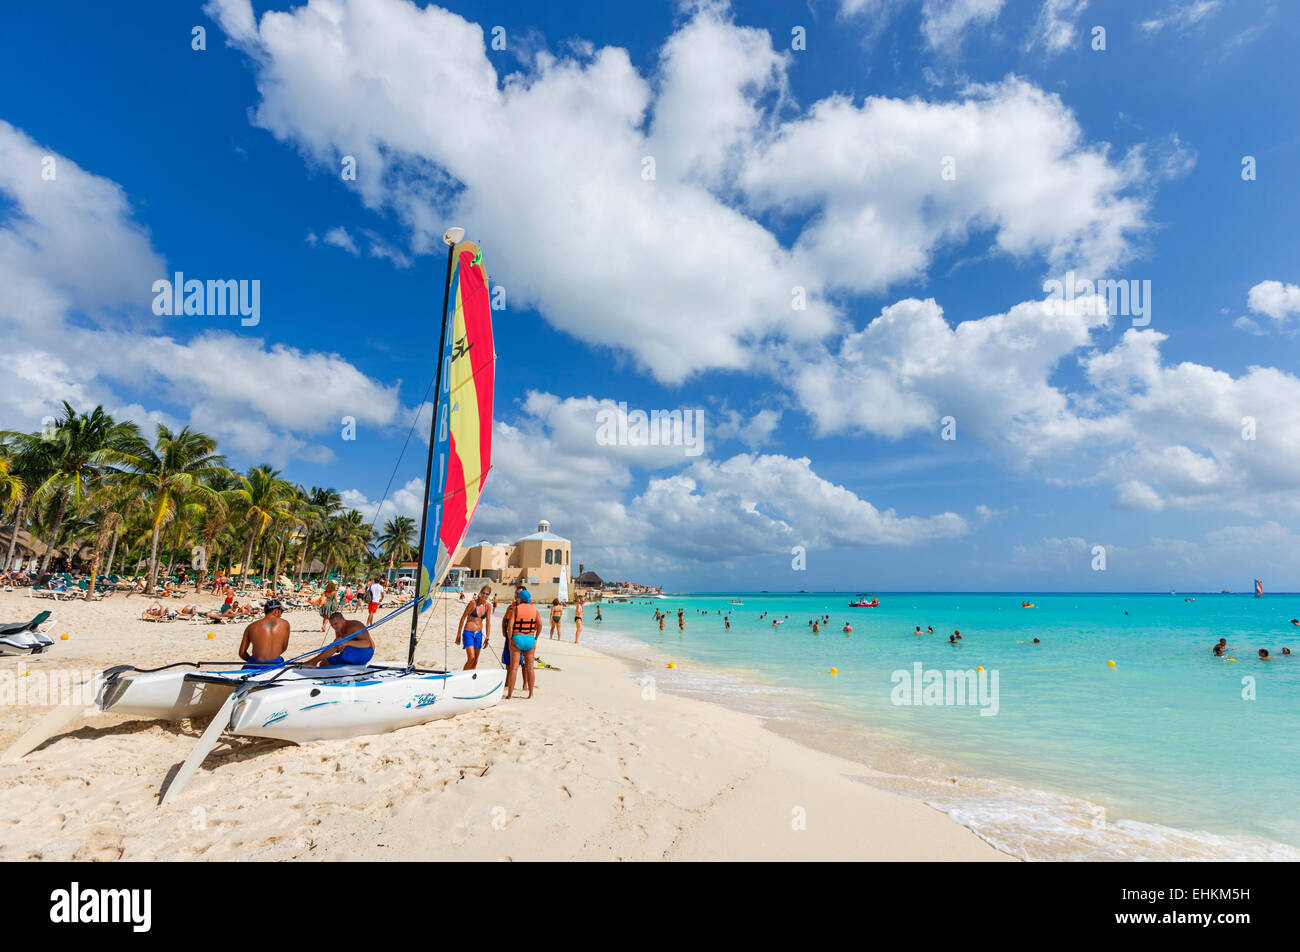 En dehors de la plage, l'hôtel Riu Playacar Playacar, Playa del Carmen, Riviera Maya, péninsule du Yucatan, Quintana Roo, Mexique Banque D'Images